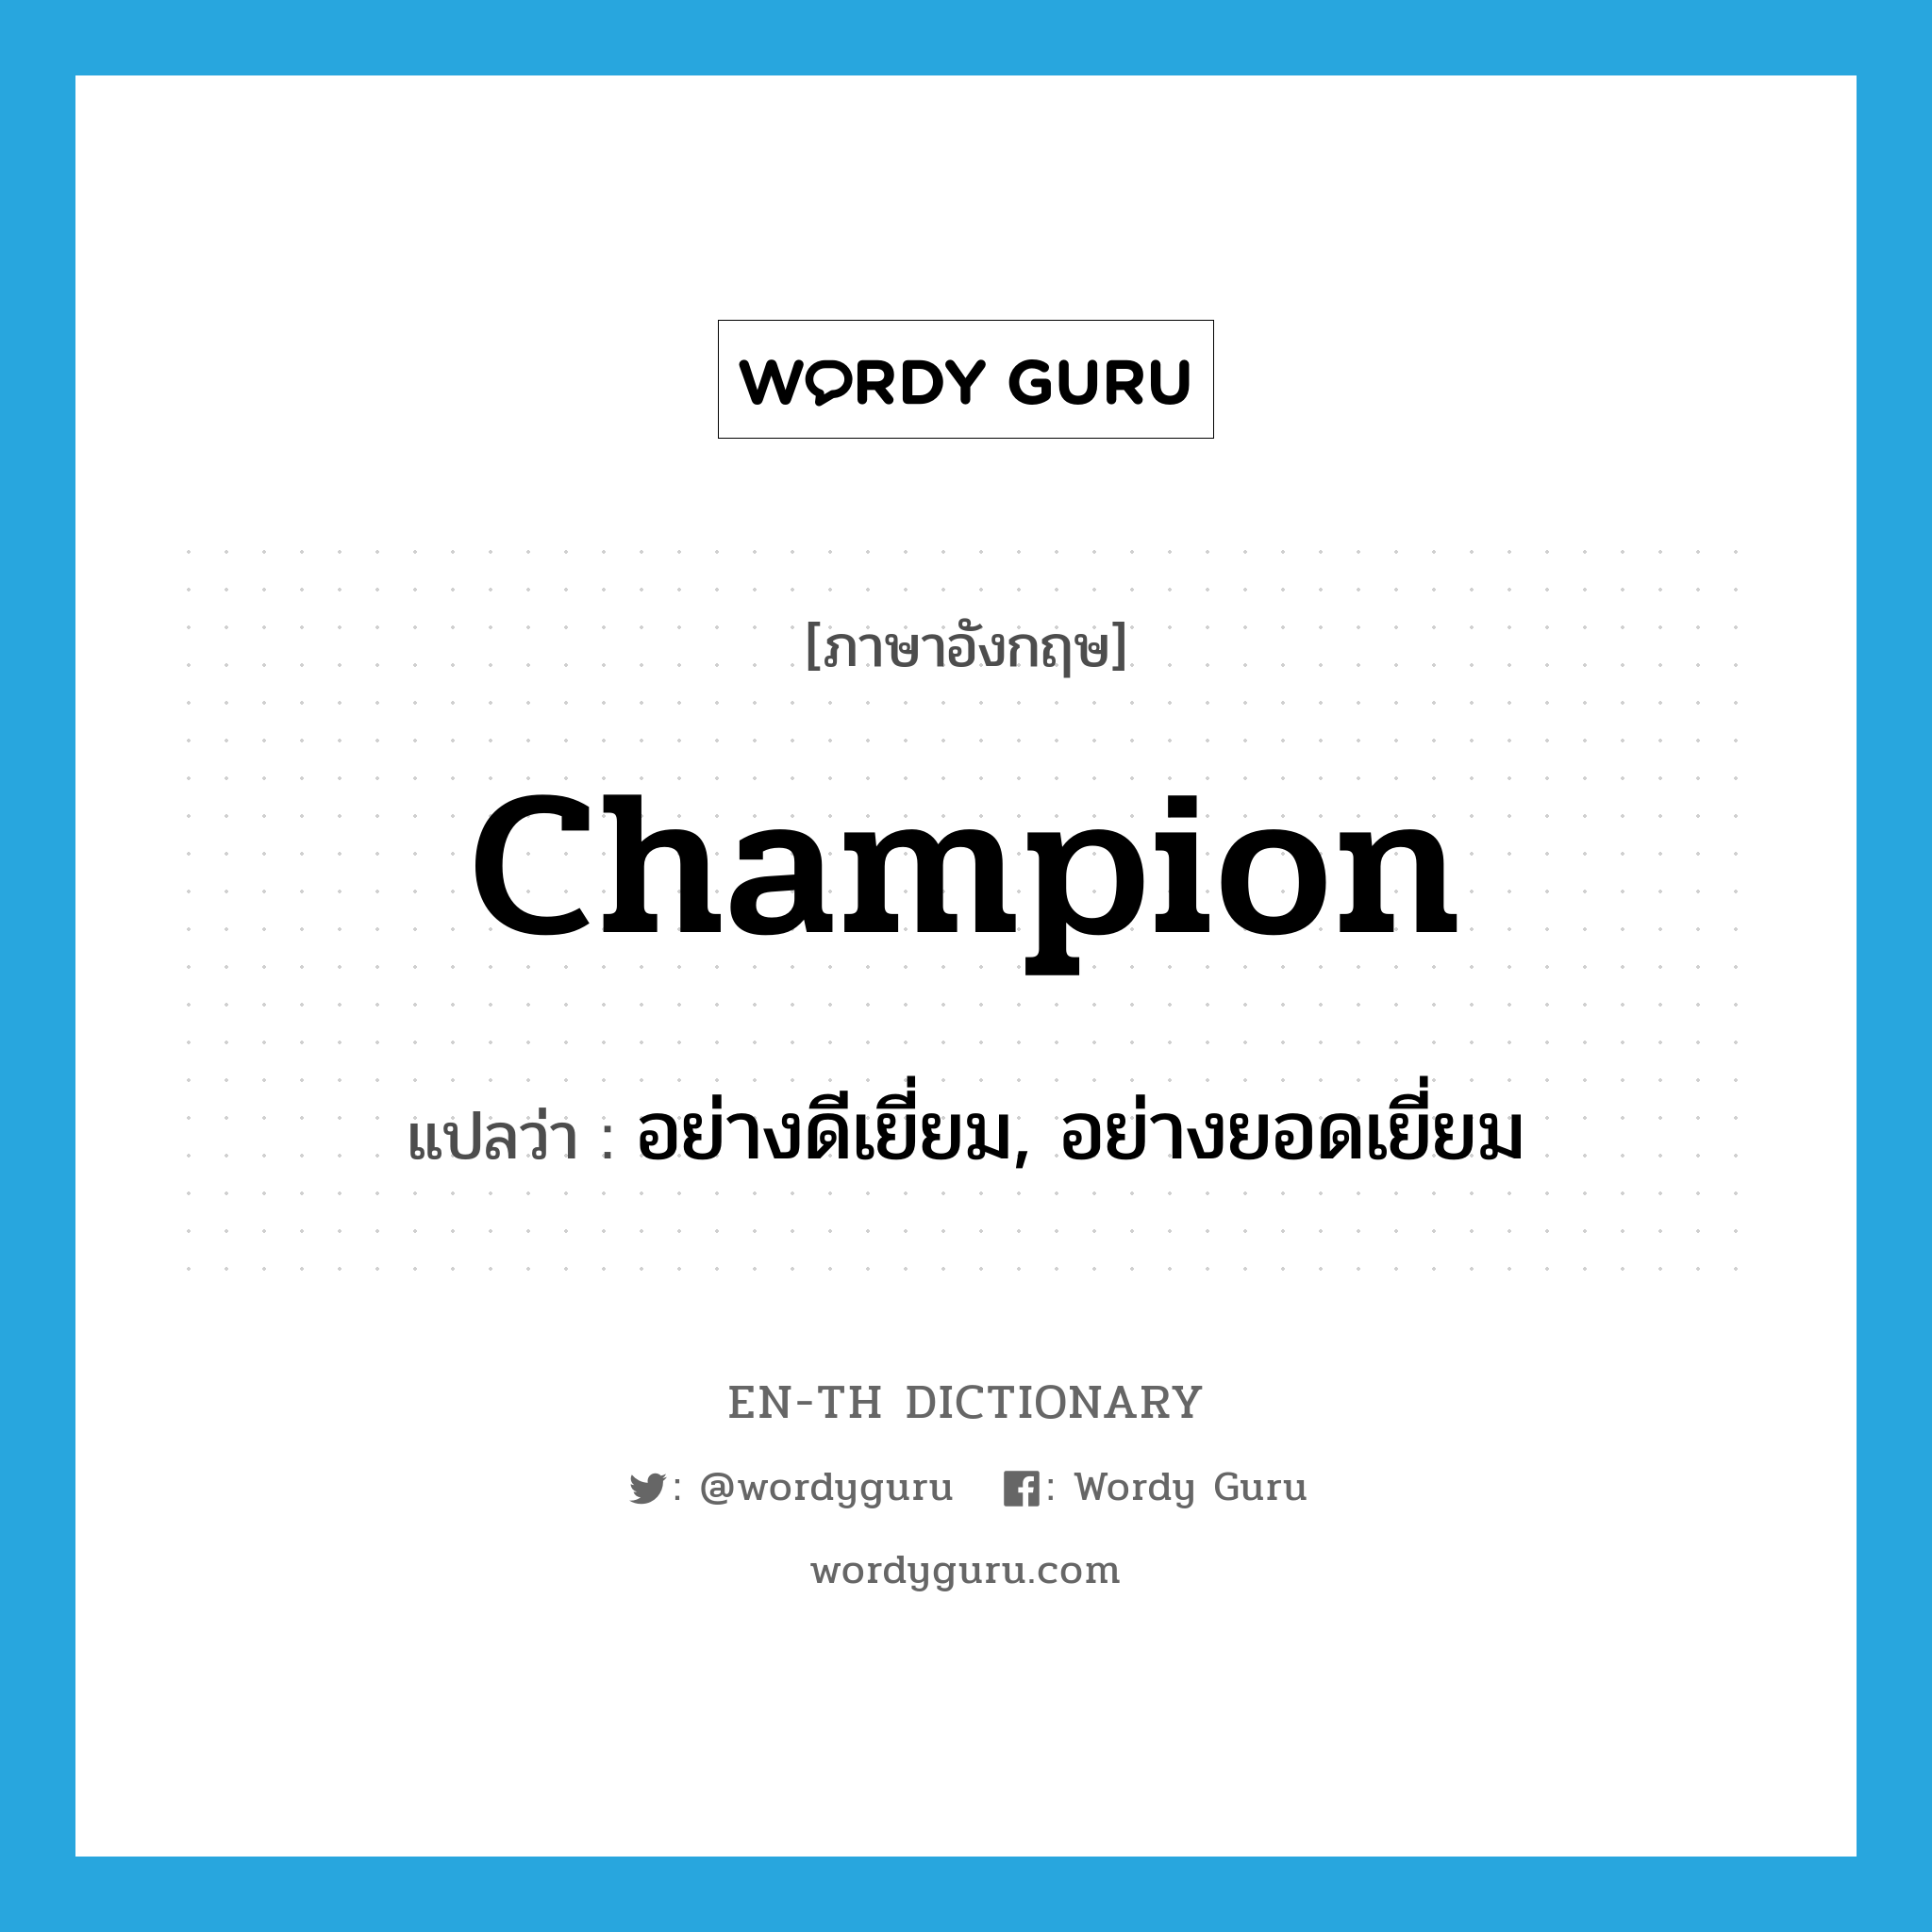 champion แปลว่า?, คำศัพท์ภาษาอังกฤษ champion แปลว่า อย่างดีเยี่ยม, อย่างยอดเยี่ยม ประเภท ADV หมวด ADV